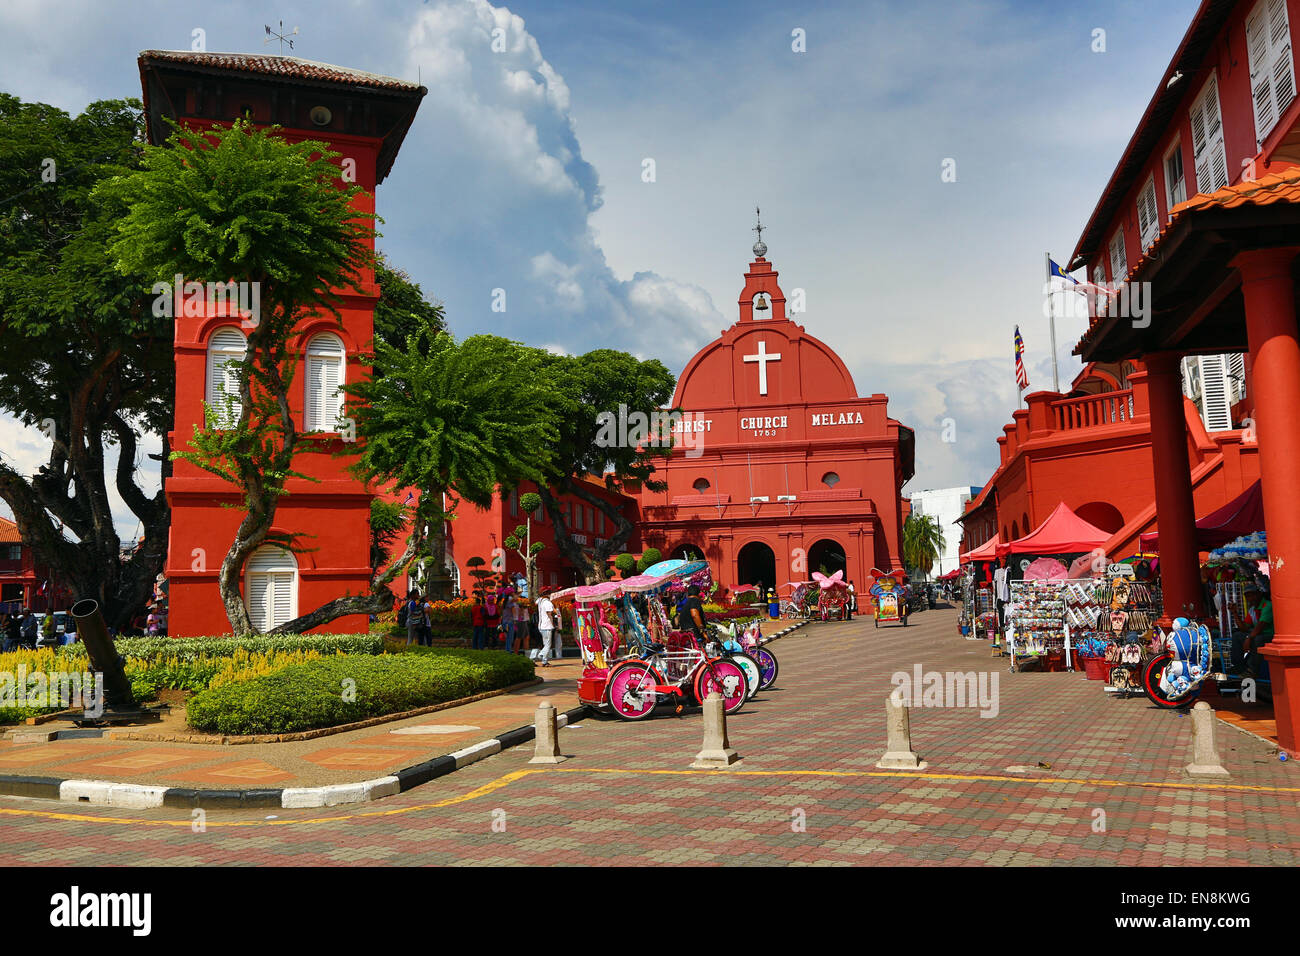 Christ Church à Dutch Square, connu comme la Place Rouge, à Malacca, Malaisie Banque D'Images